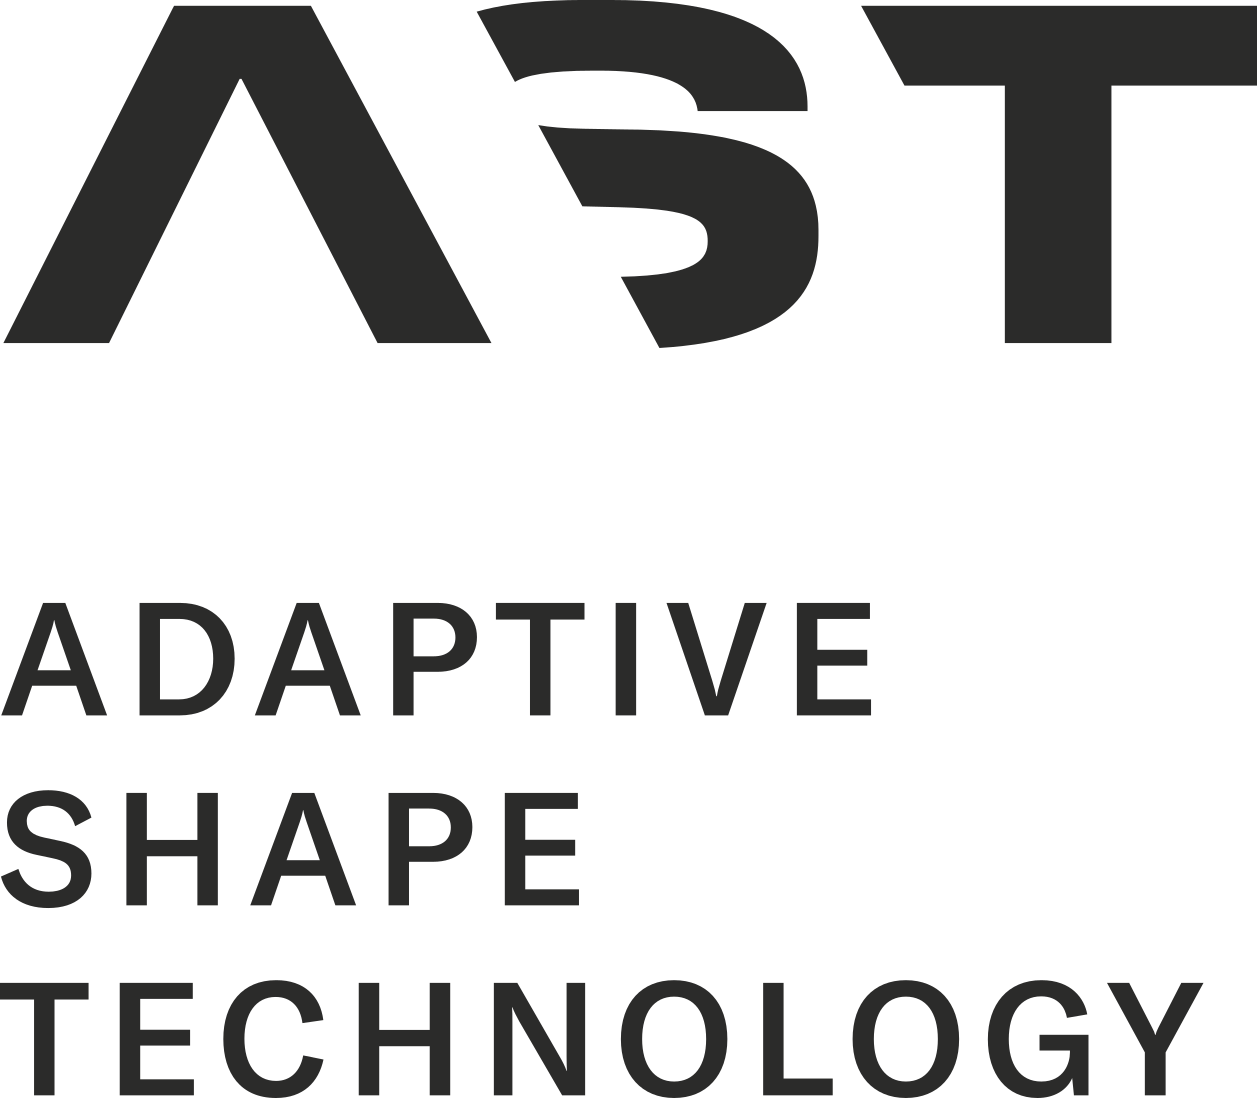 AST (Adaptive Shape Technology)